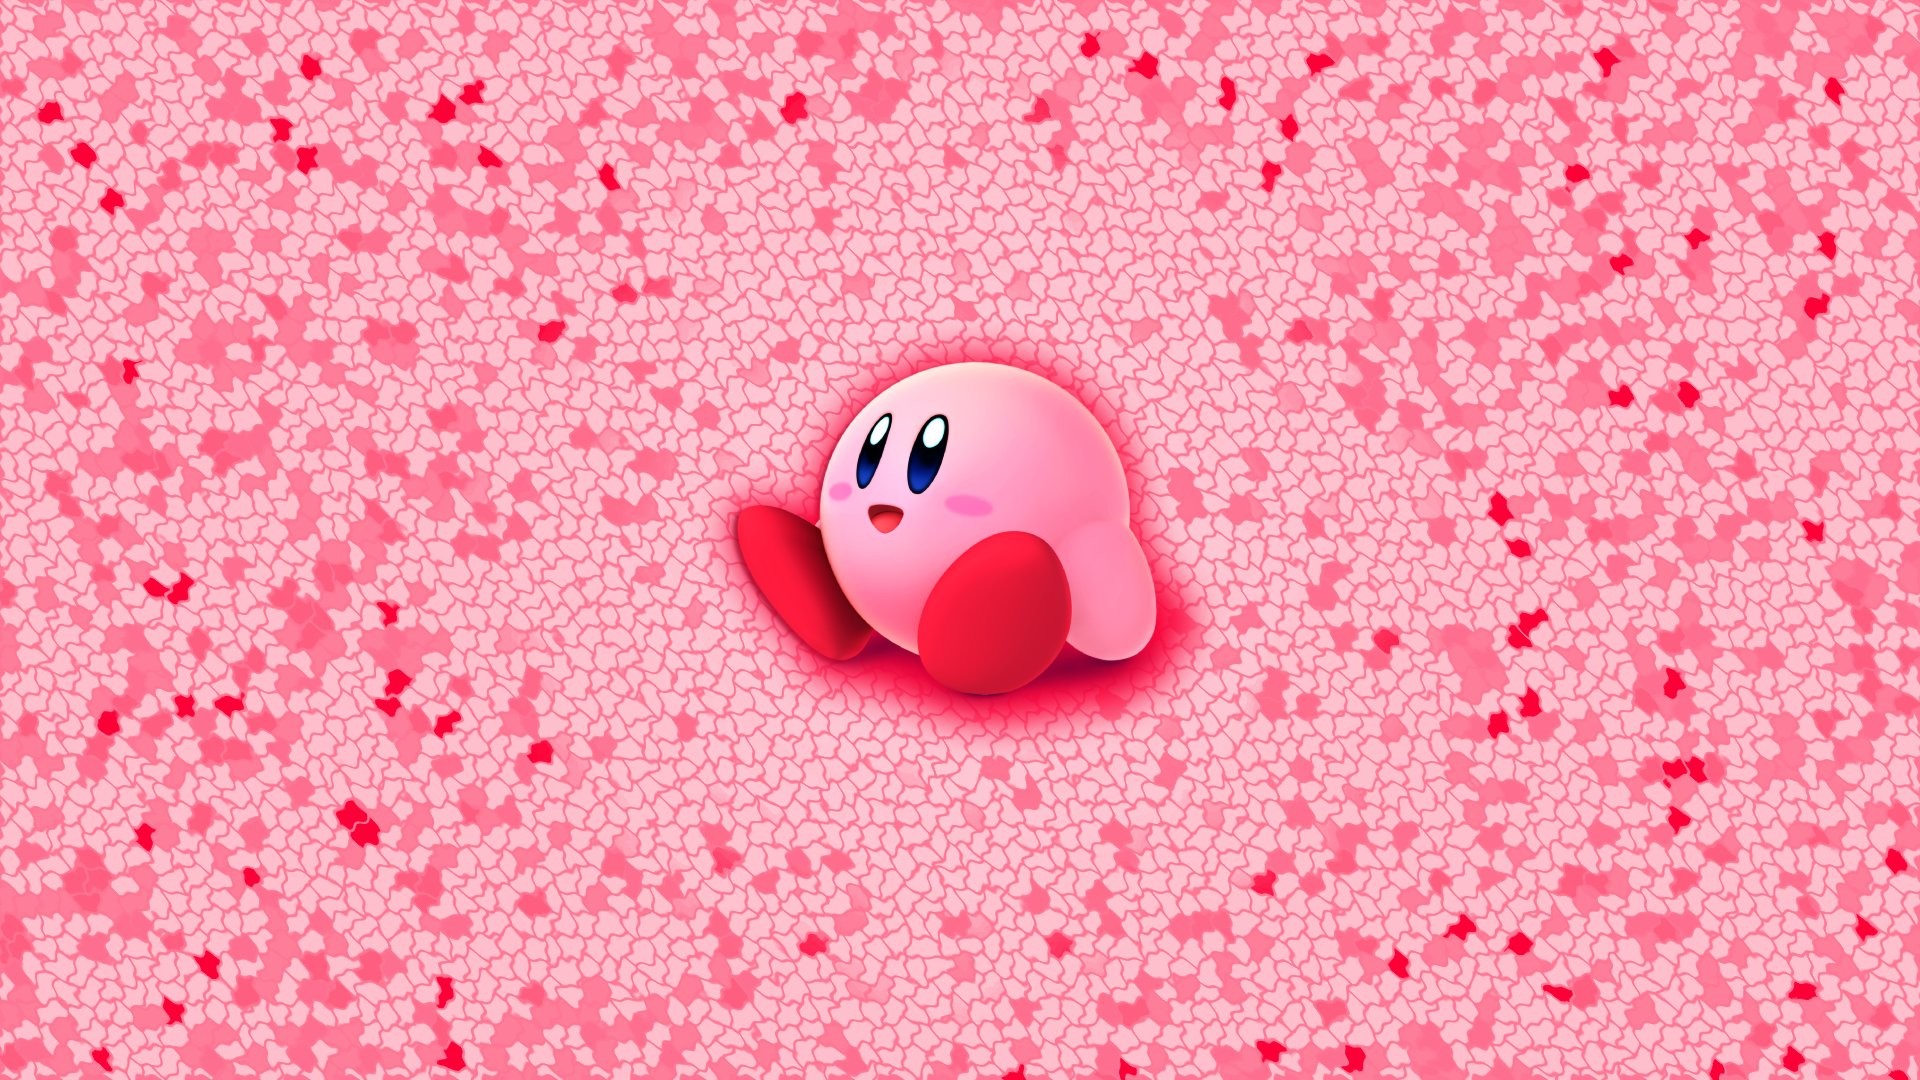 Kirby HD Wallpapers Free download  PixelsTalkNet